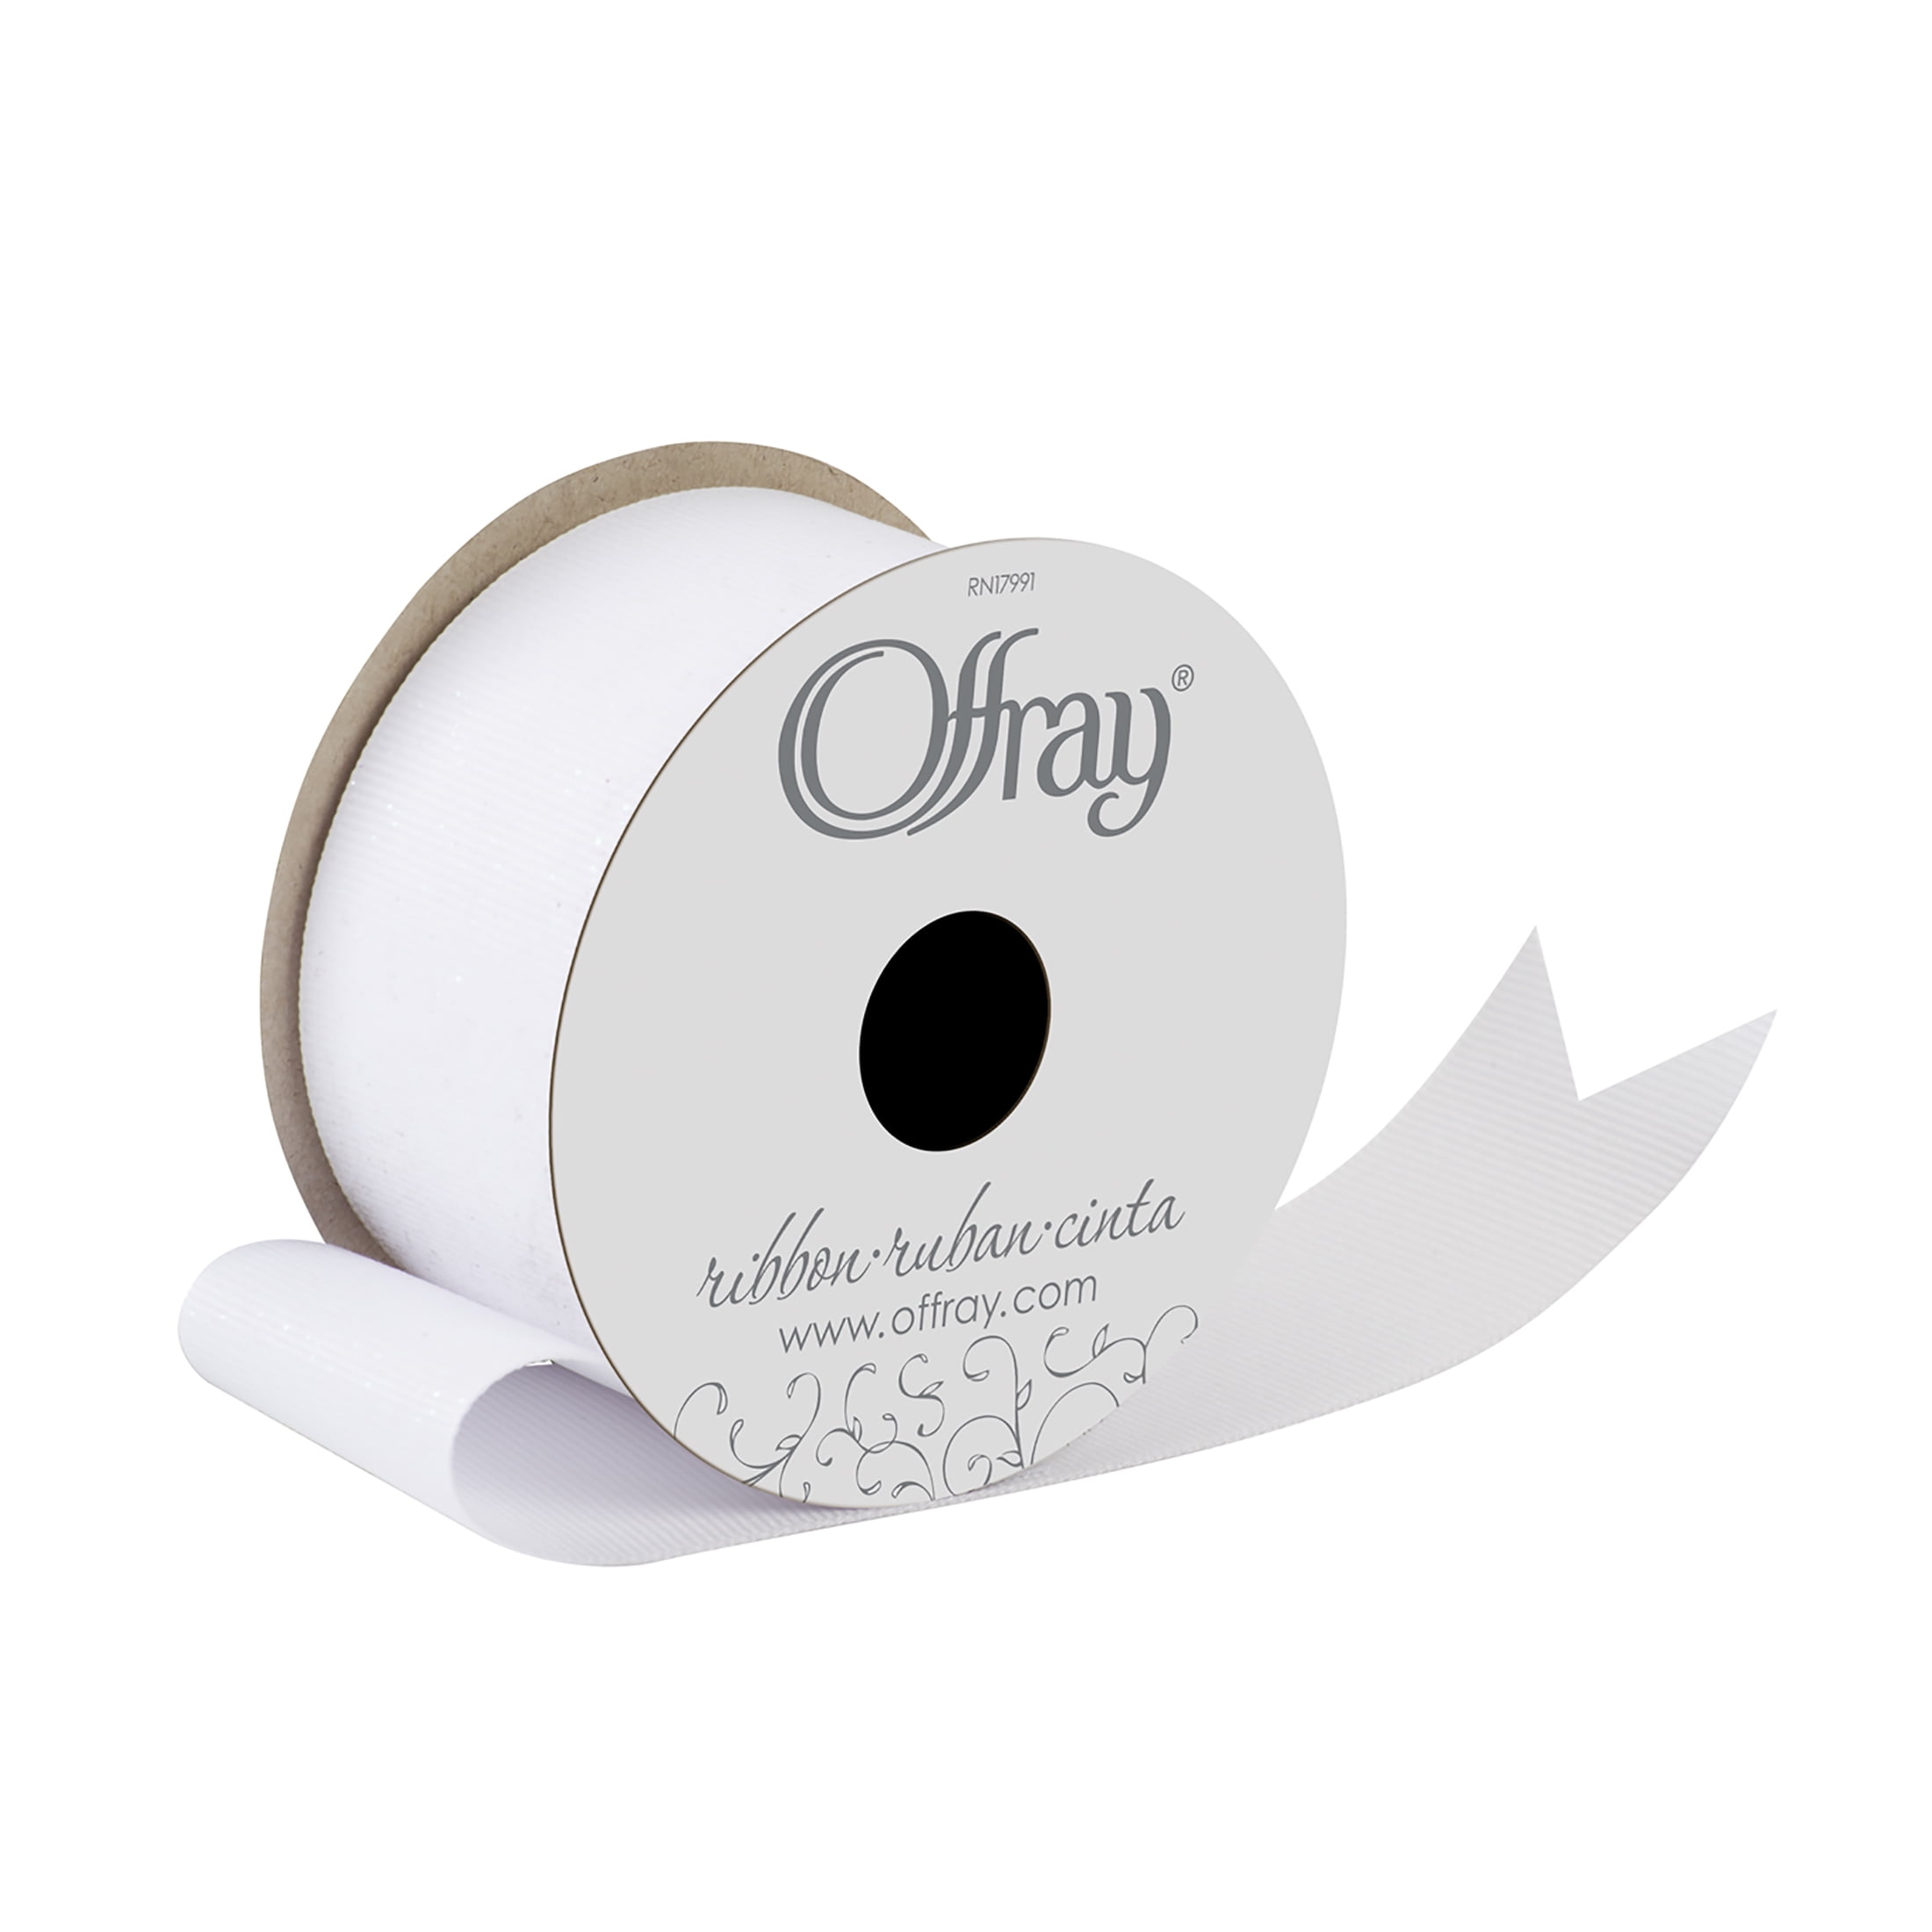 Offray Ribbon, White 1 1/2 inch Grosgrain Glitter Polyester Ribbon, 9 feet